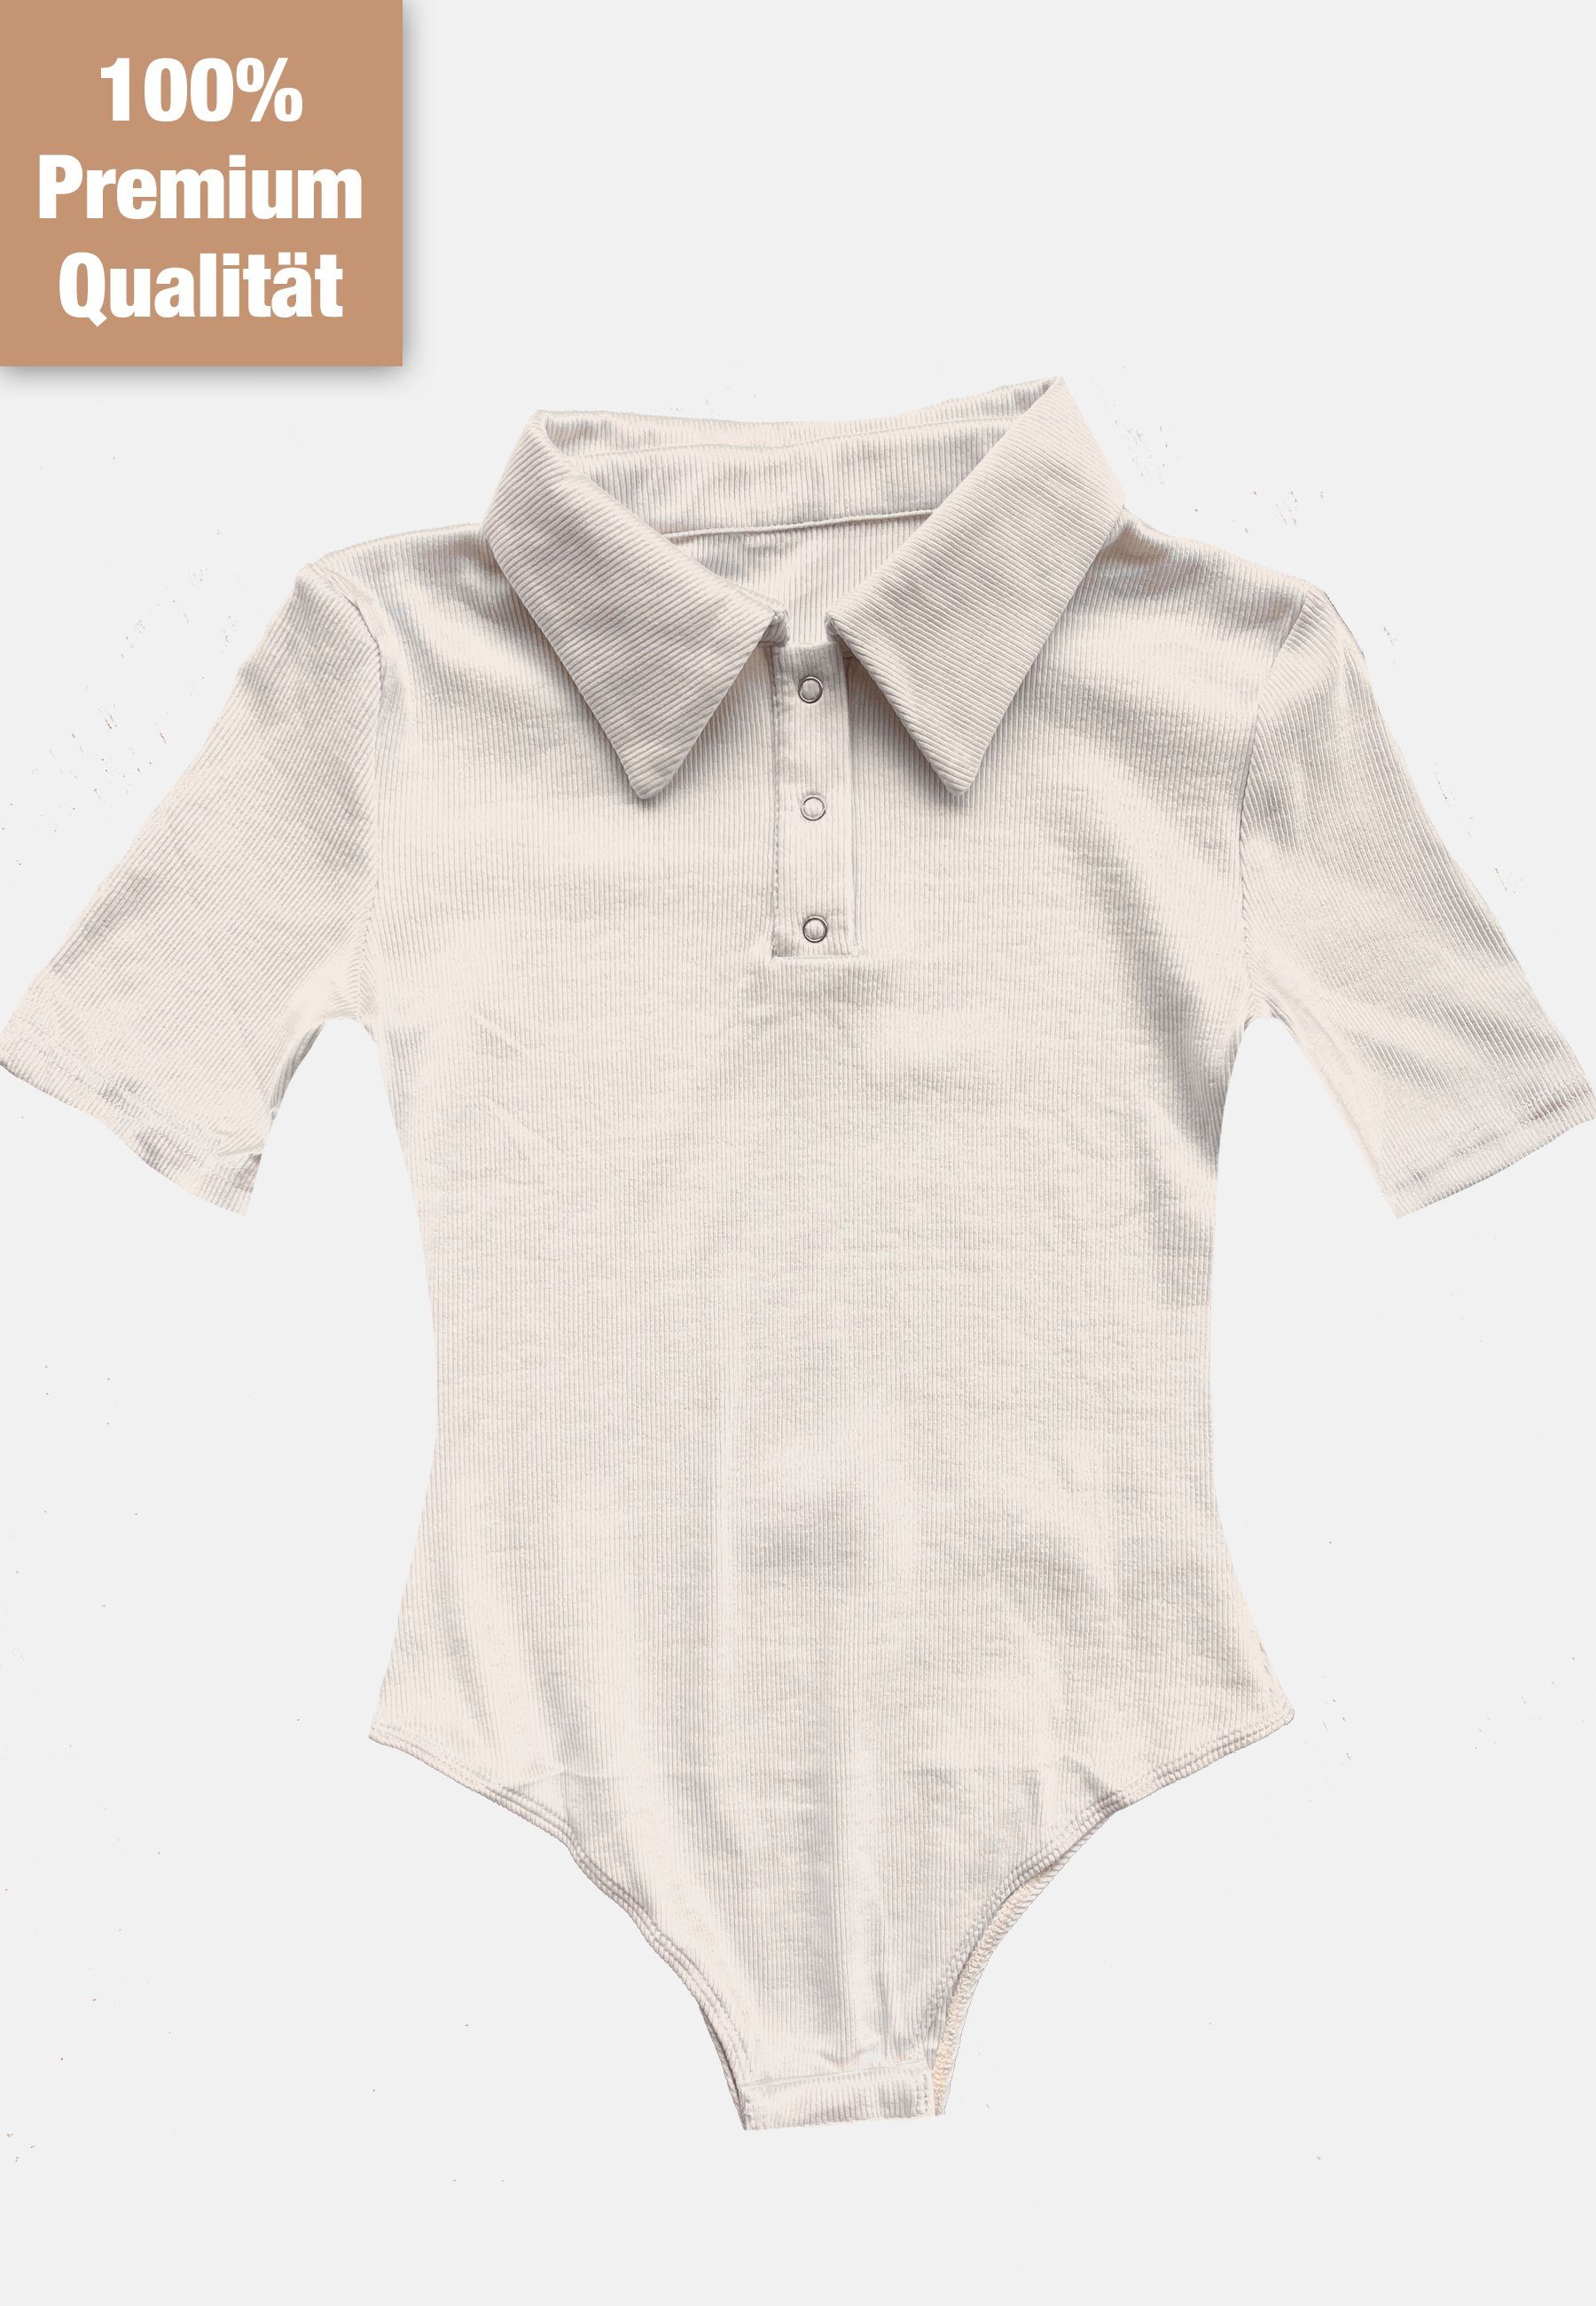 #1 Topseller Kurzarmbody Premium Kurzarm Body Shirt mit Druckknöpfen Beige